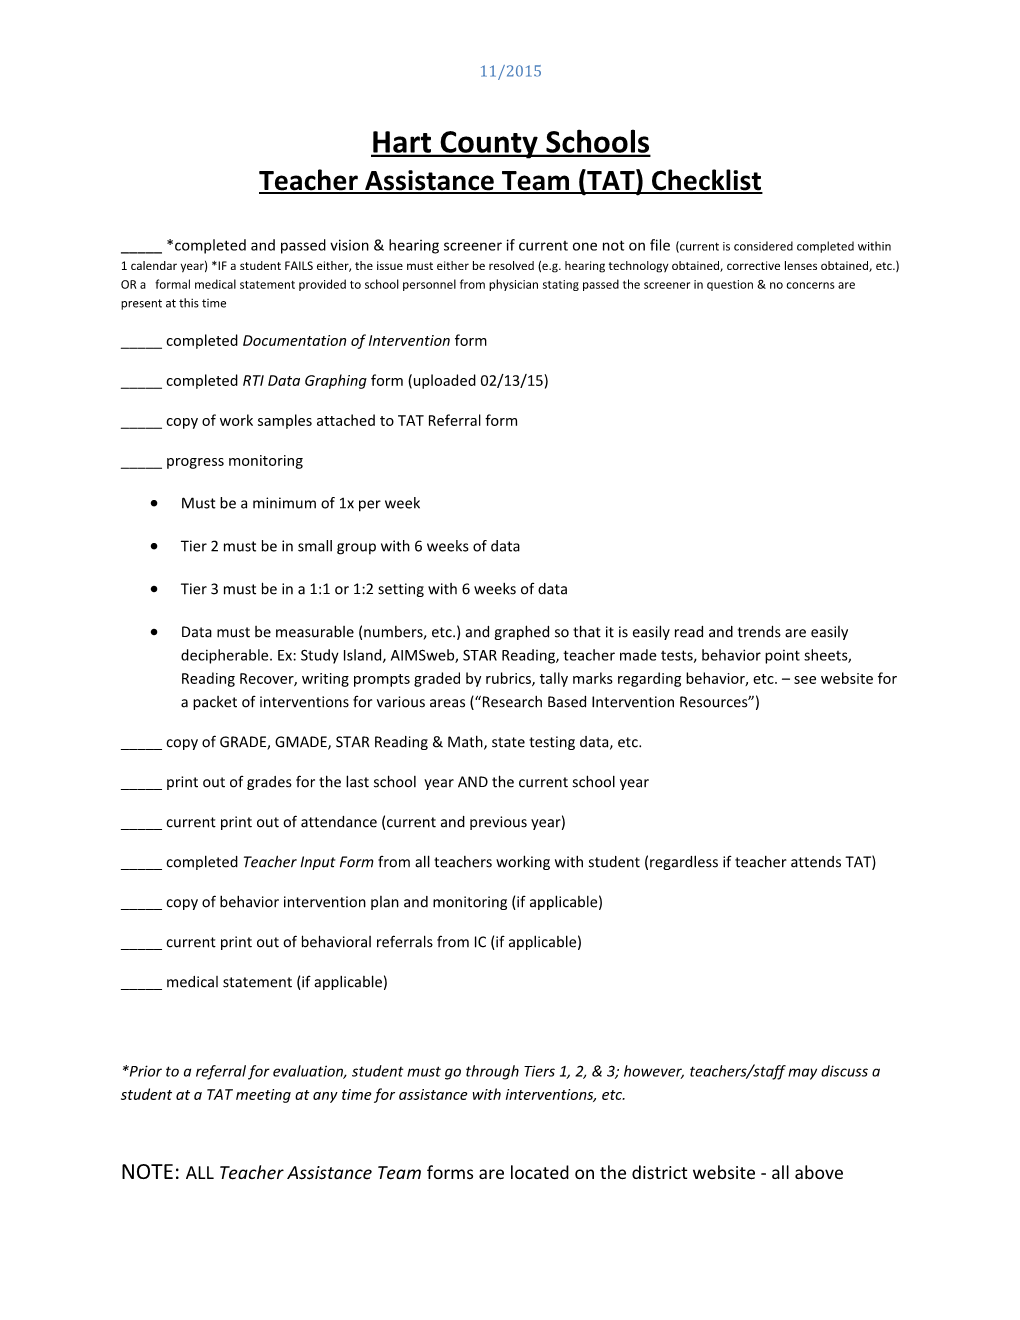 Teacher Assistance Team (TAT) Checklist